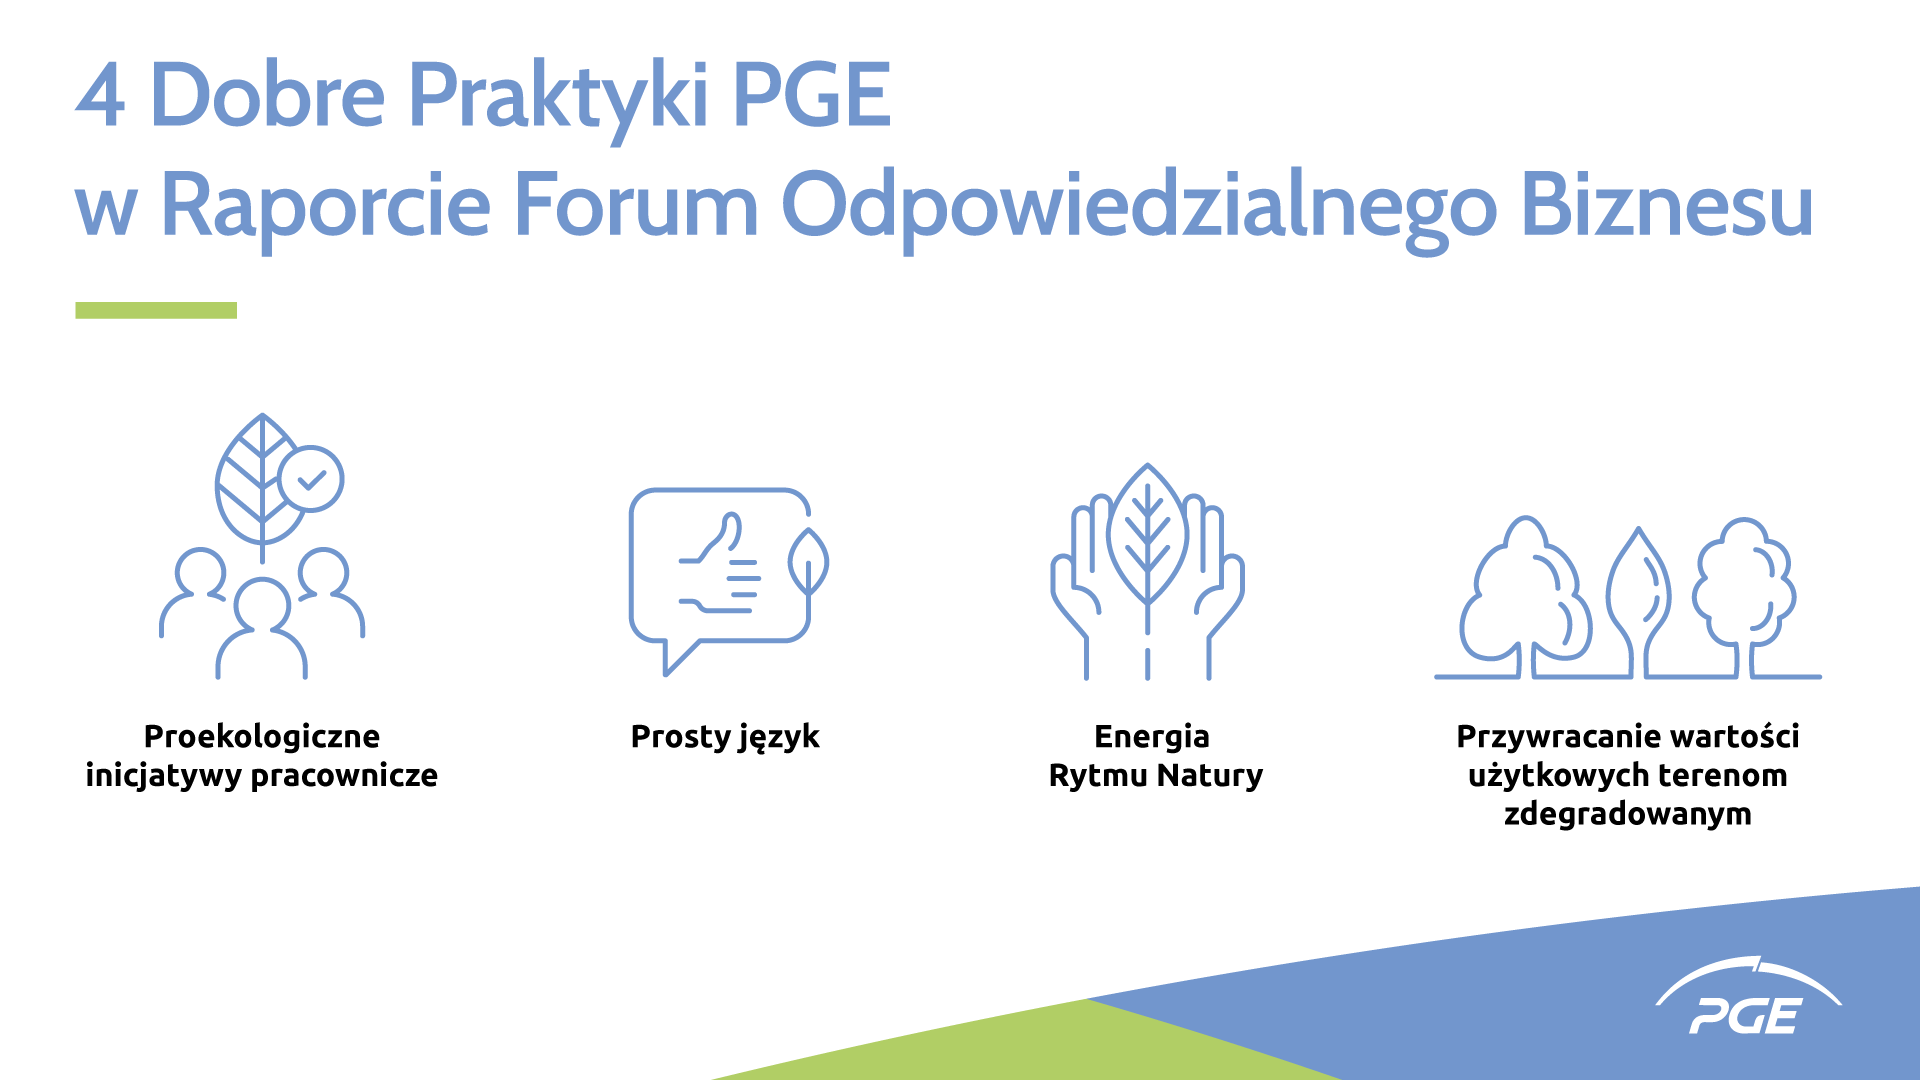 Dobre Praktyki PGE w Raporcie Forum Odpowiedzialnego Biznesu